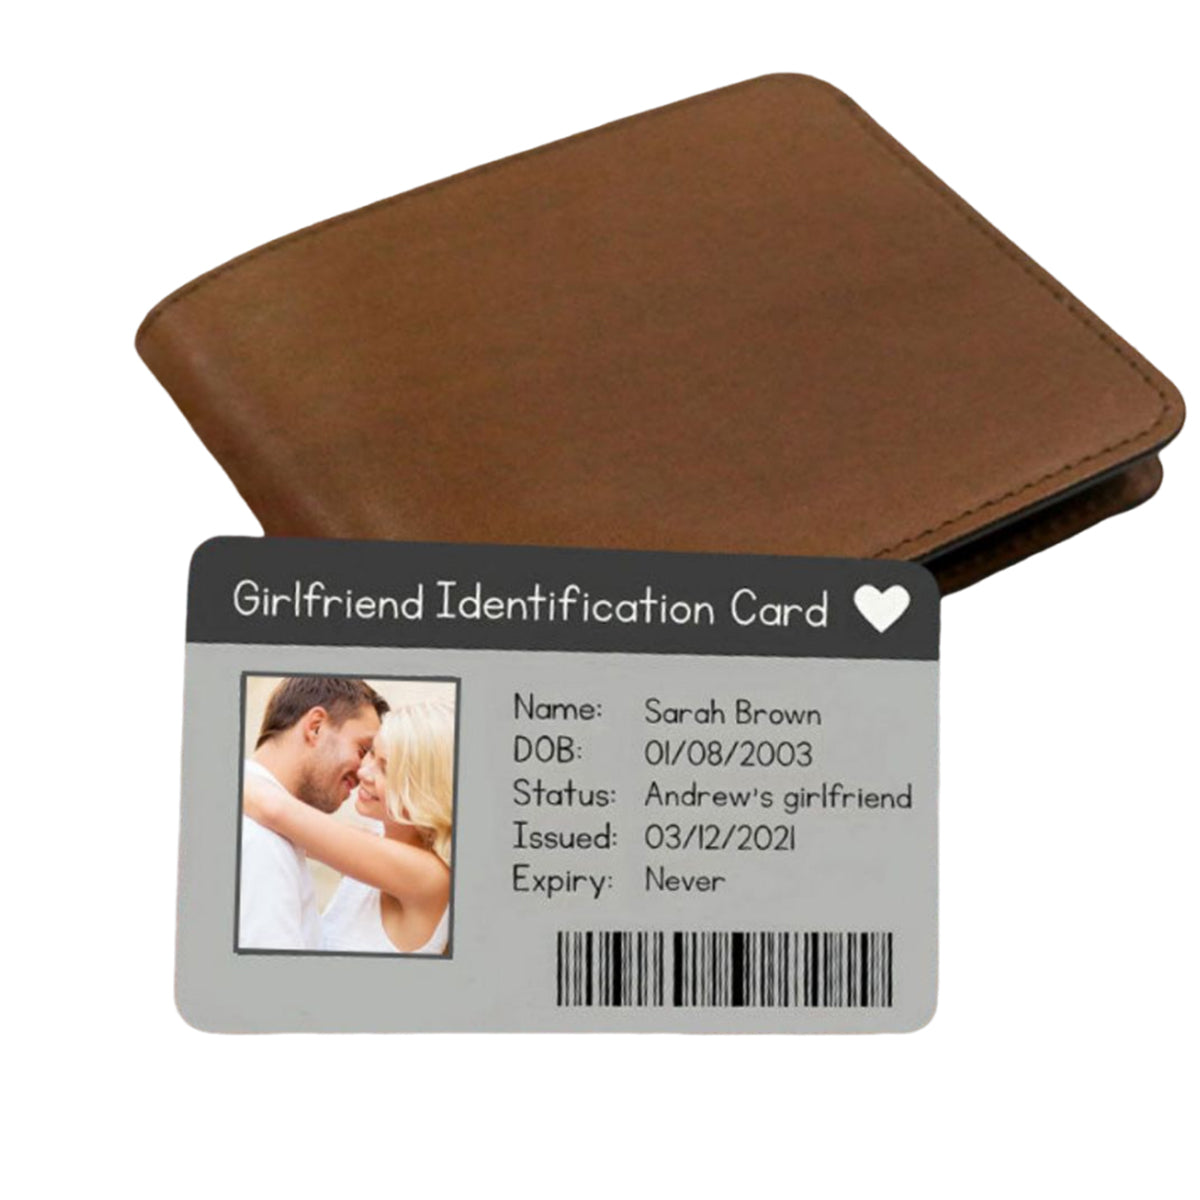 Girlfriend Boyfriend Identification Card - Personalized Aluminum Wallet Card